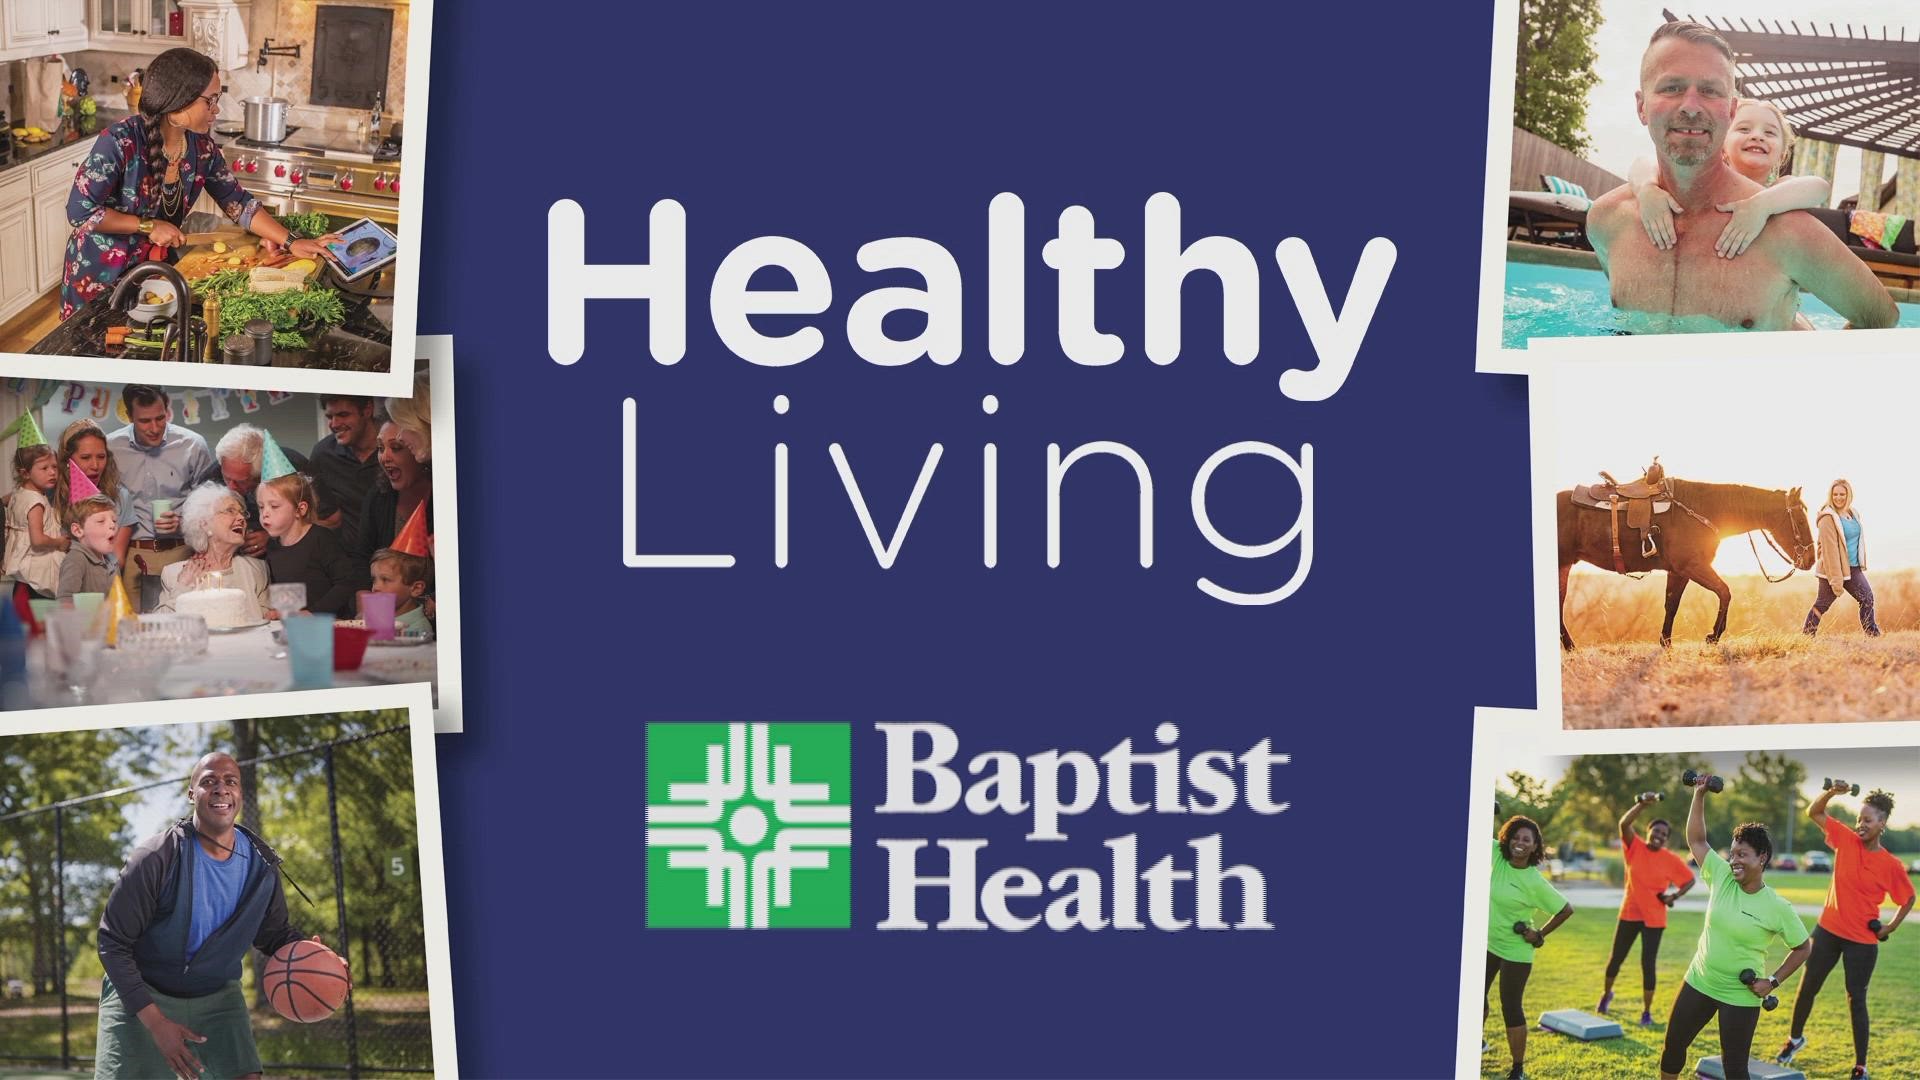 Hear How Baptist Health Can Help